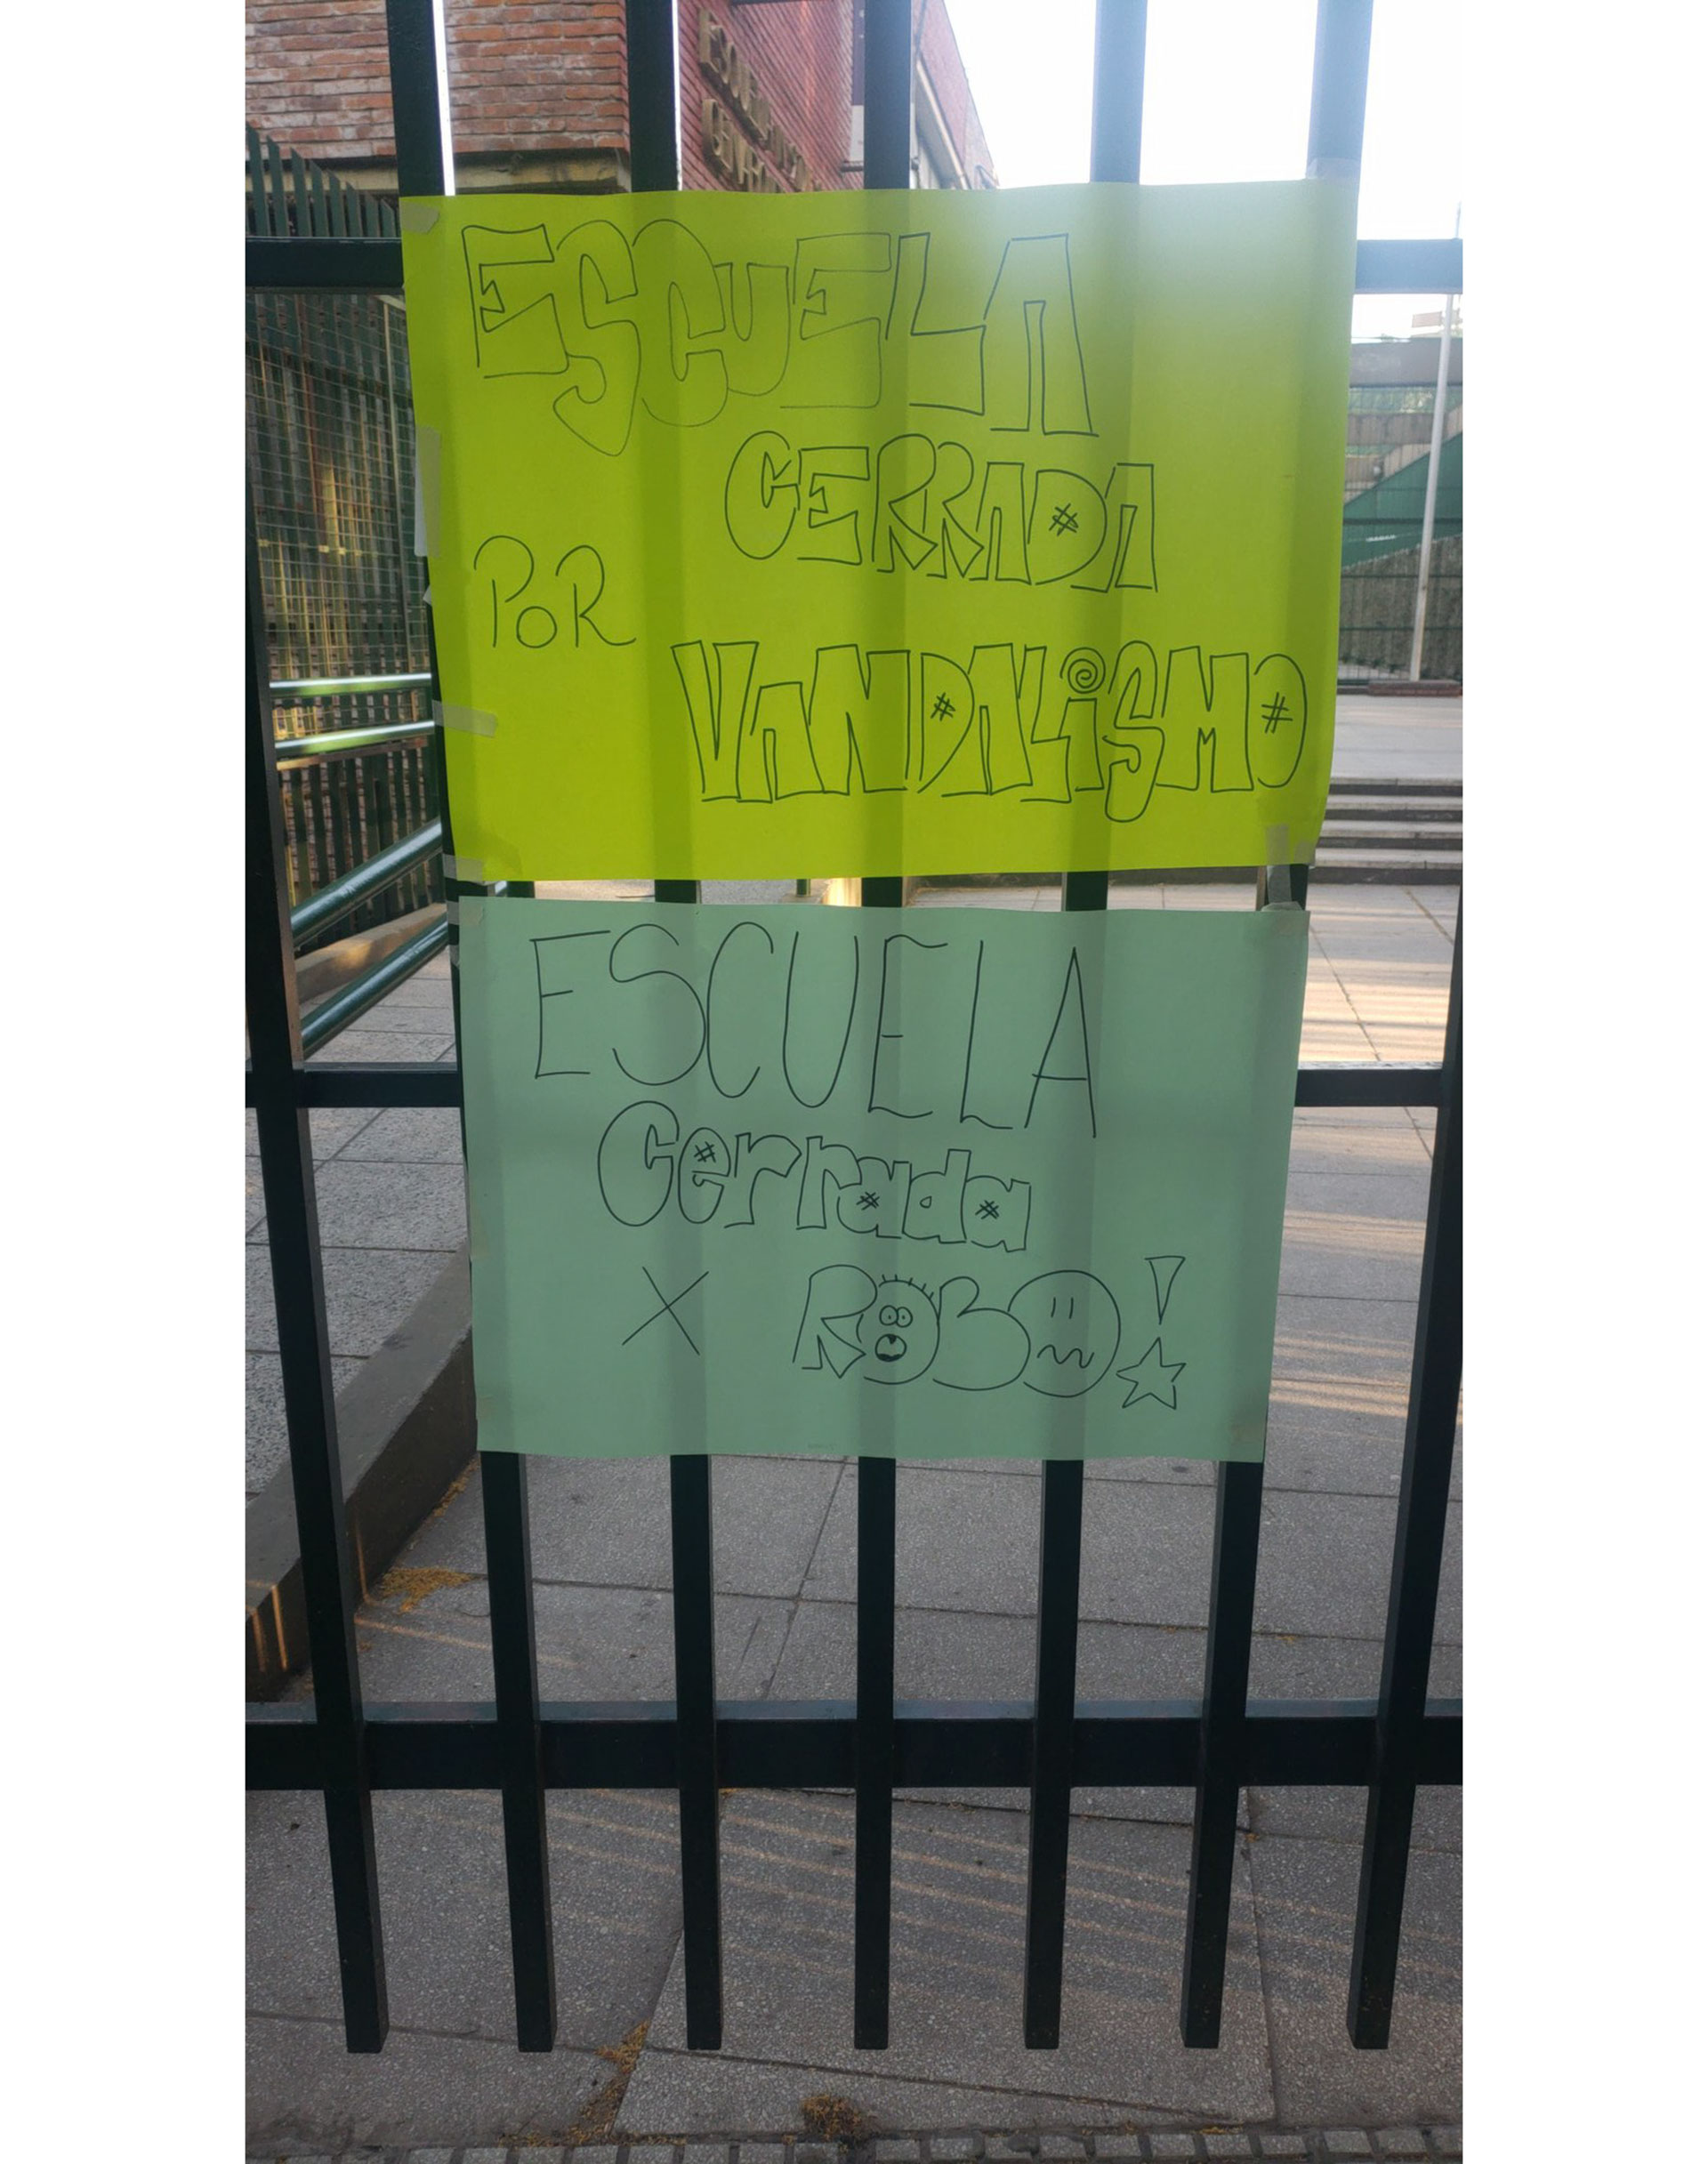 El colegio amaneció empapelado con afiches (Foto/@Marcelitaojeda)